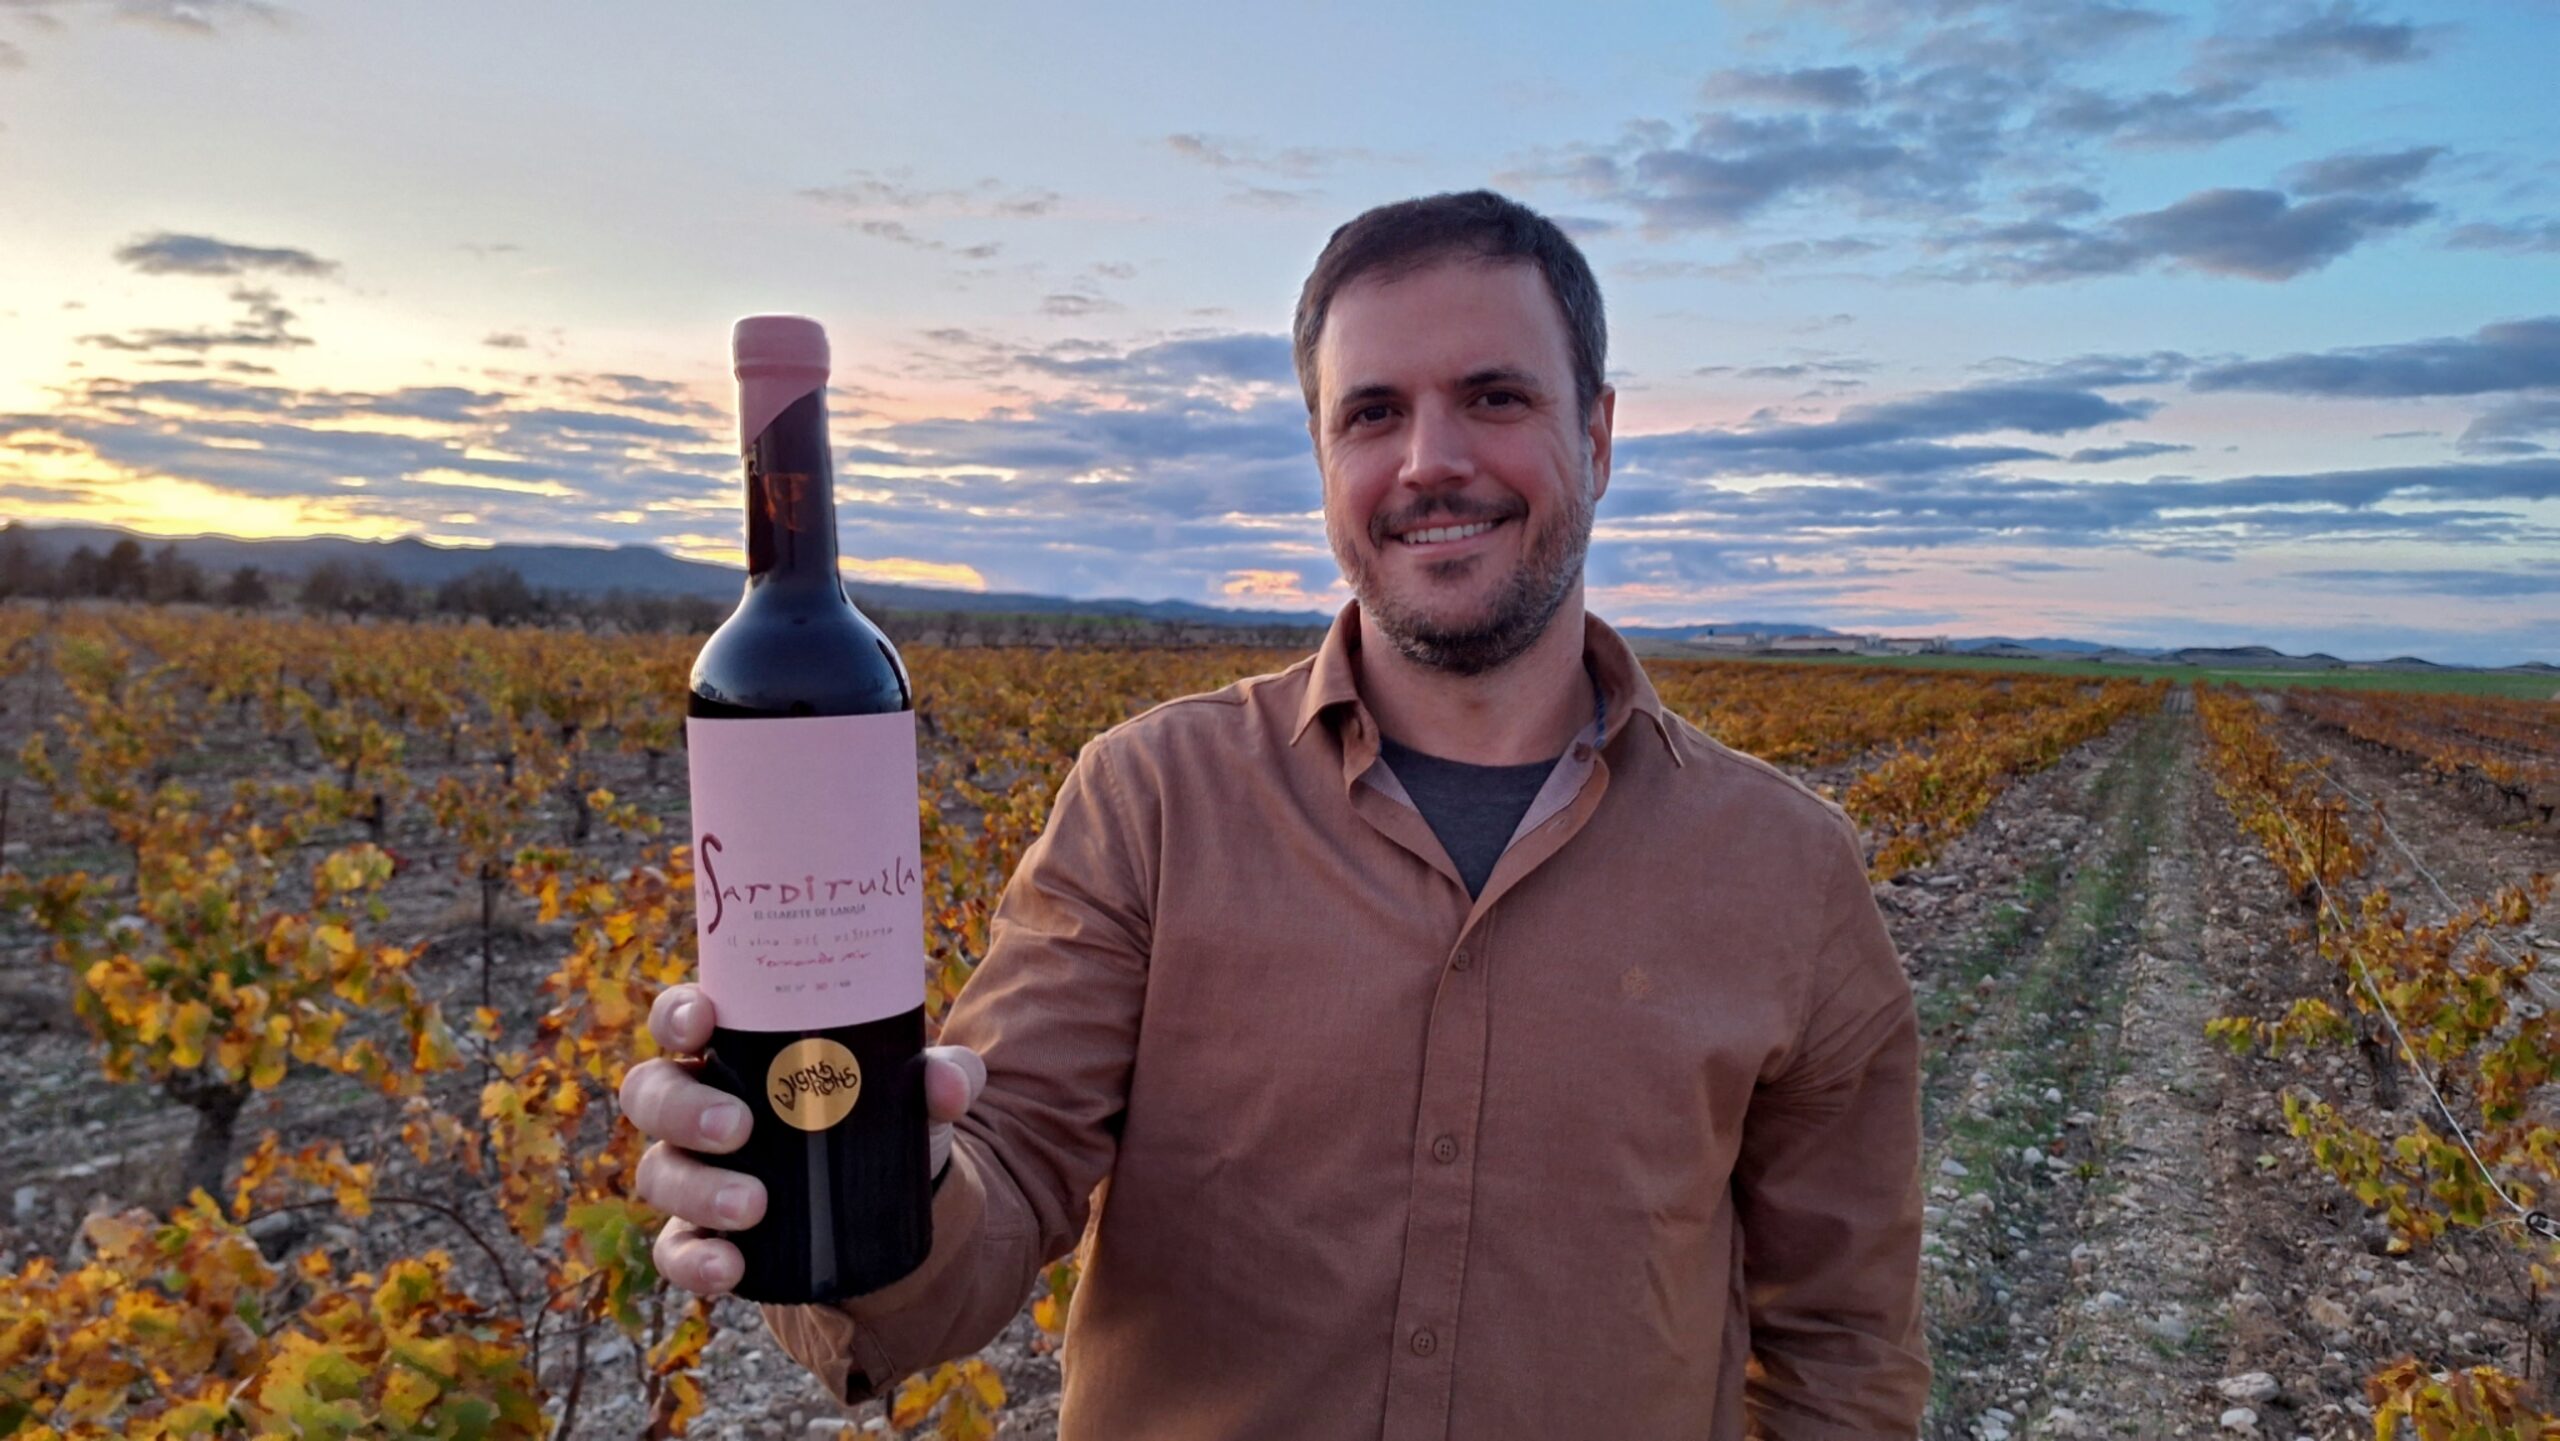 Fernando Mir, entre sus viñedos y con una de las botellas de su nuevo clarete, La Sardiruela.